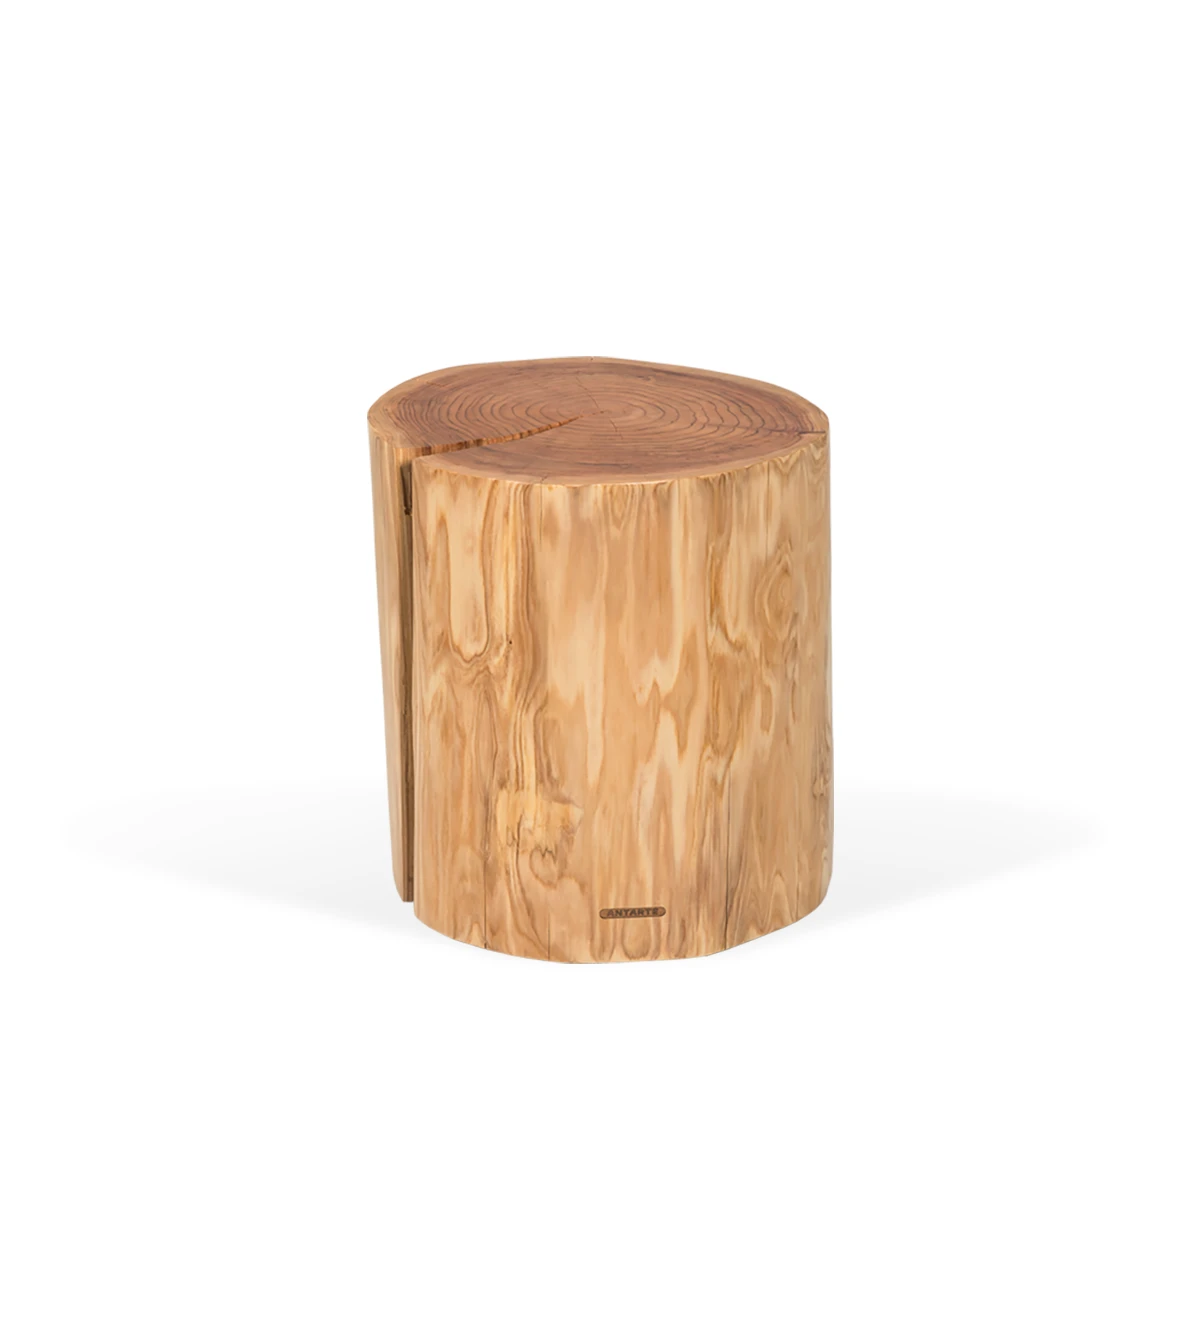 Table basse tronc haut en bois naturel de cryptoméria, Ø 45 à 55 cm.